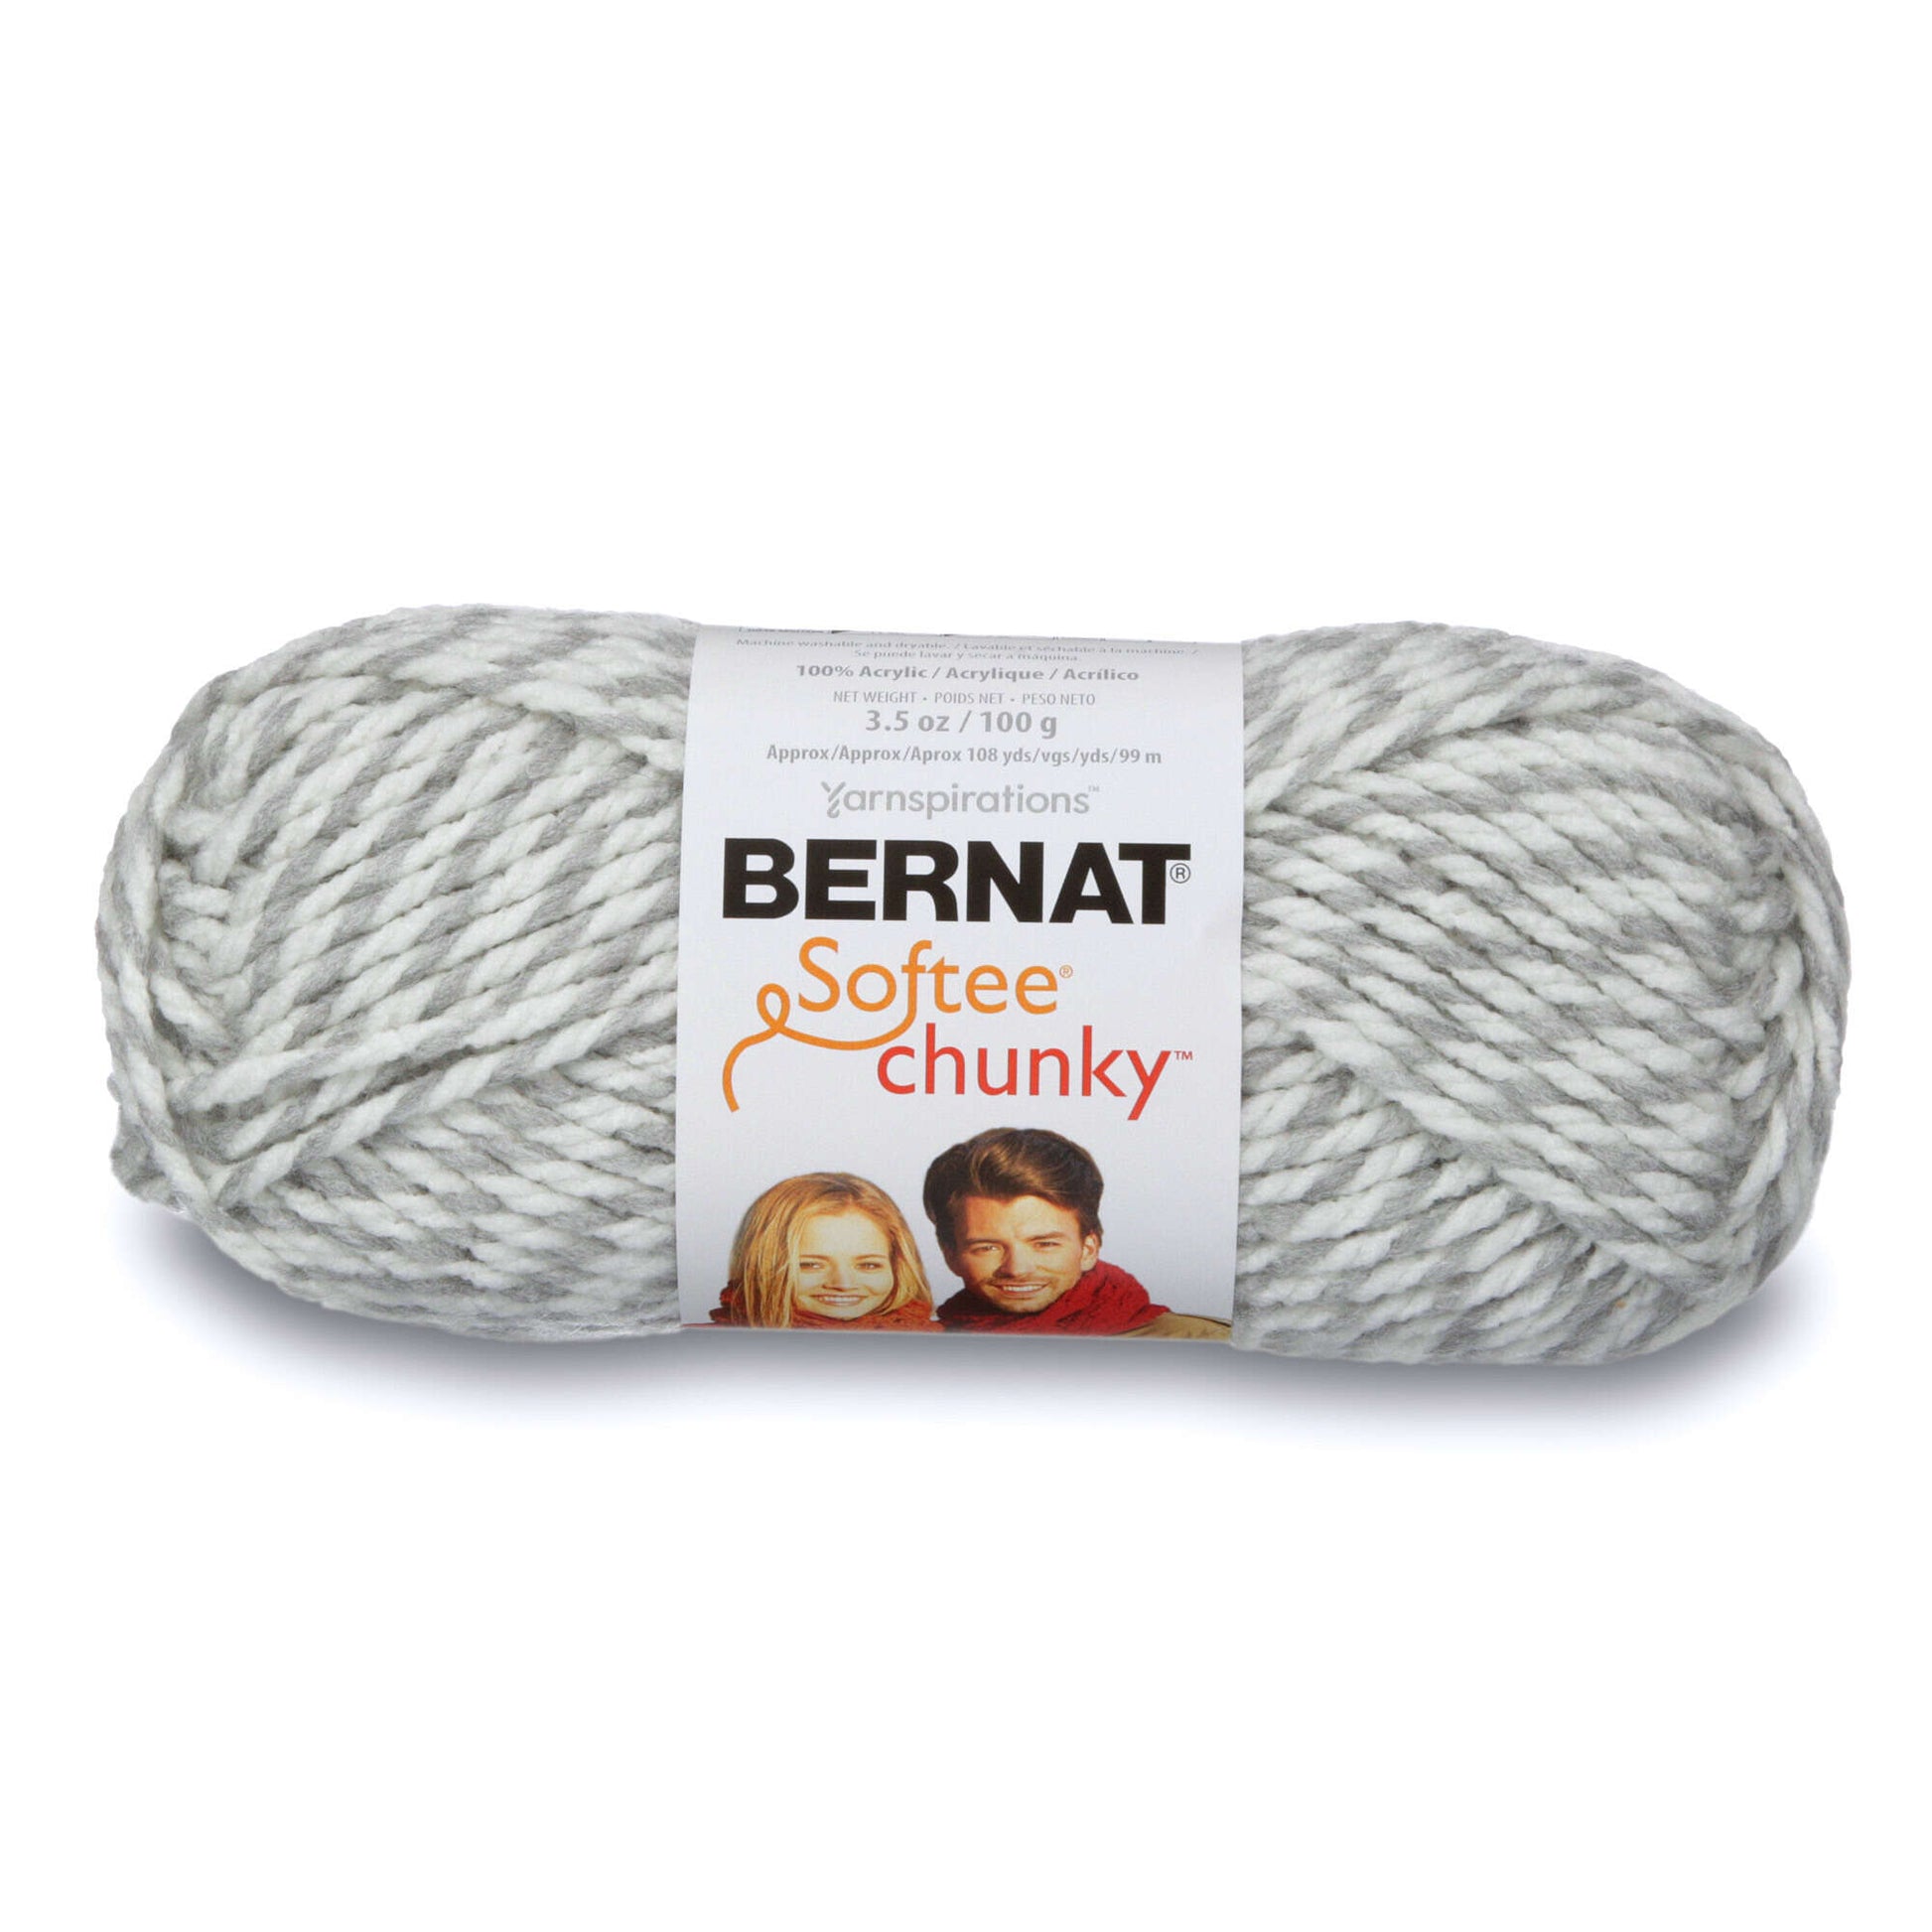 Multicolor Chunky Yarn, Soft Crochet Yarn, 100g Thick Yarn for